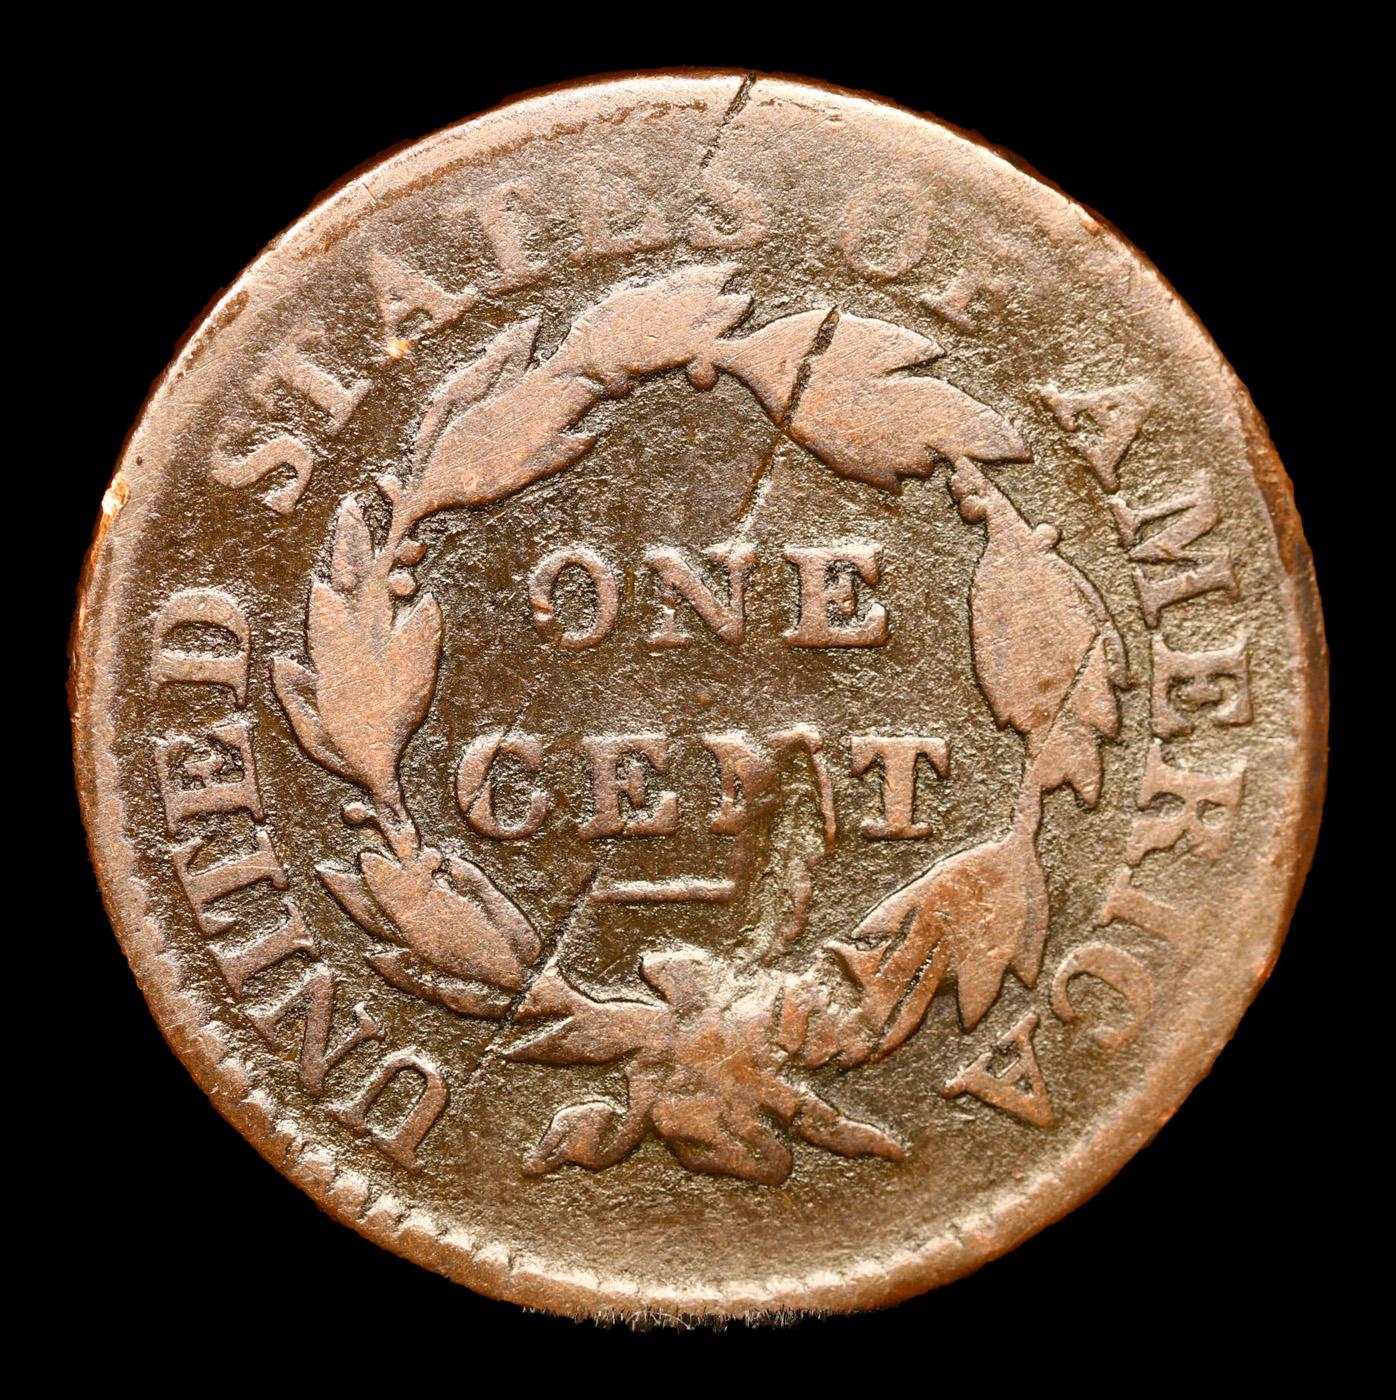 1816 Classic Head Large Cent 1c Grades f details